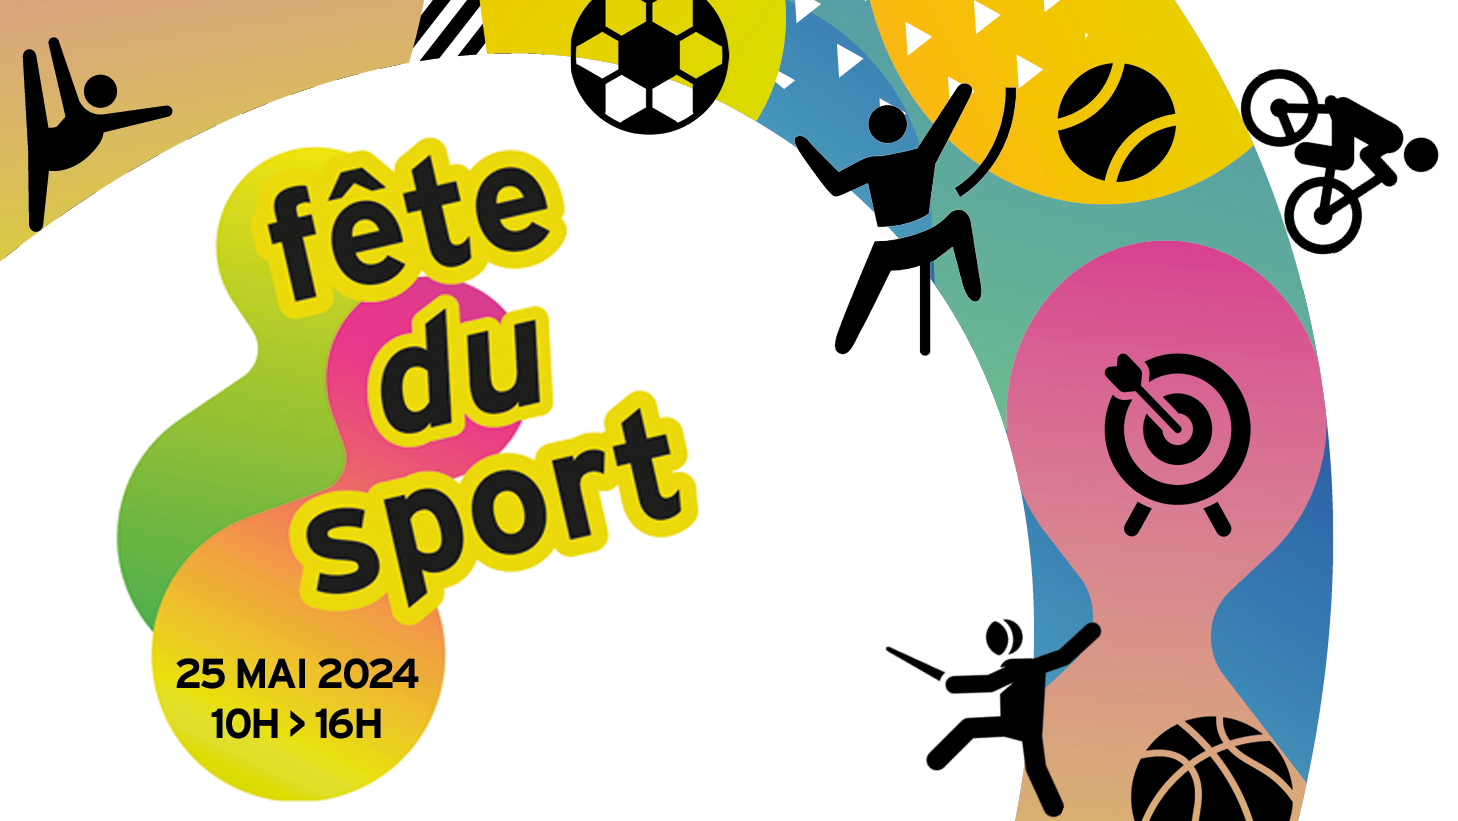 Fête du sport Samedi 25 mai 2024 de 10h à 16h